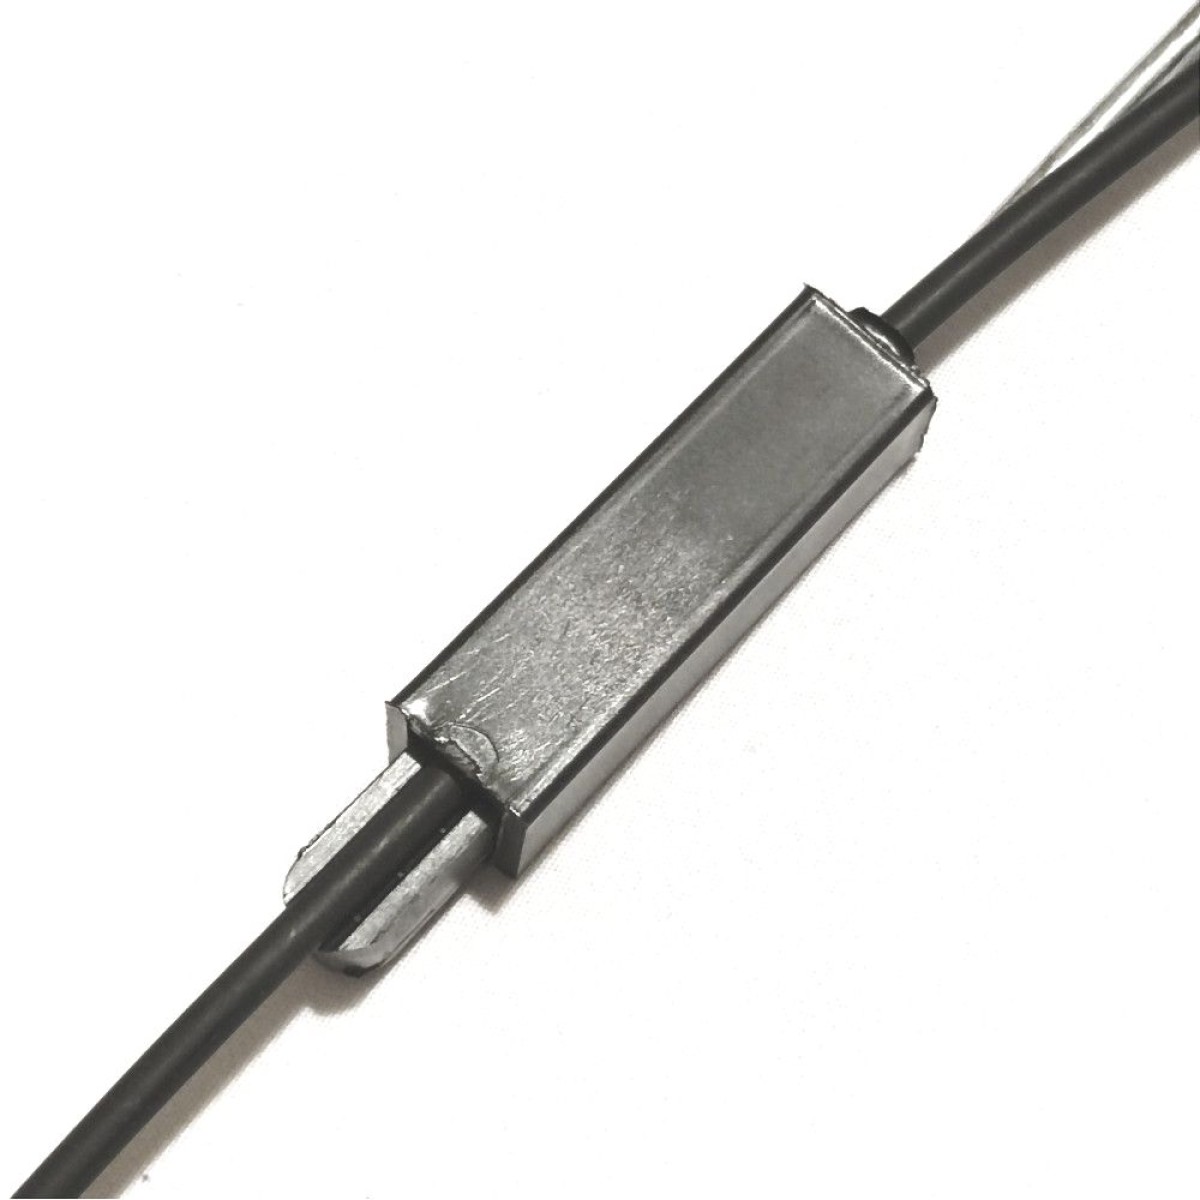 Натяжной зажим H-15 (для крепления плоских кабелей до 4 мм) 98_98.jpg - фото 3